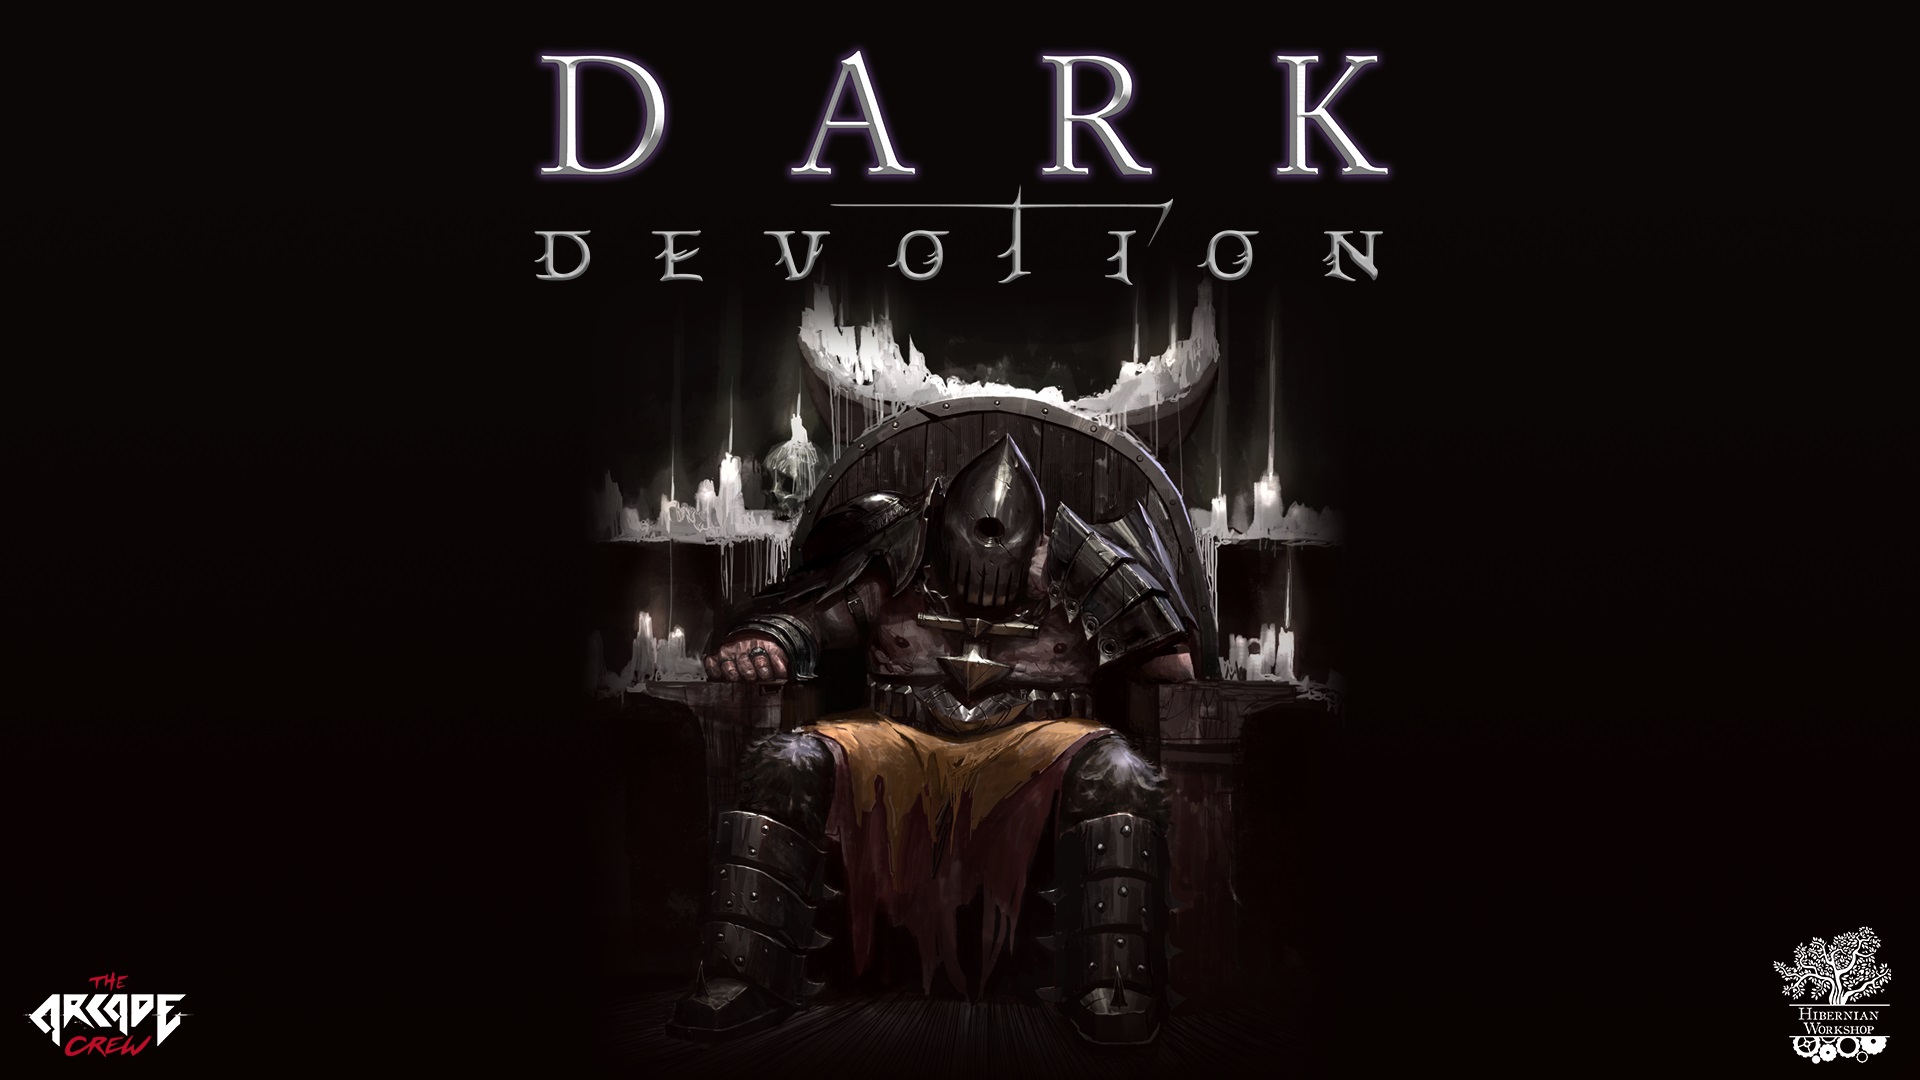 Dark Devotion traerá sufrimiento devoto a PC y consolas en 2018